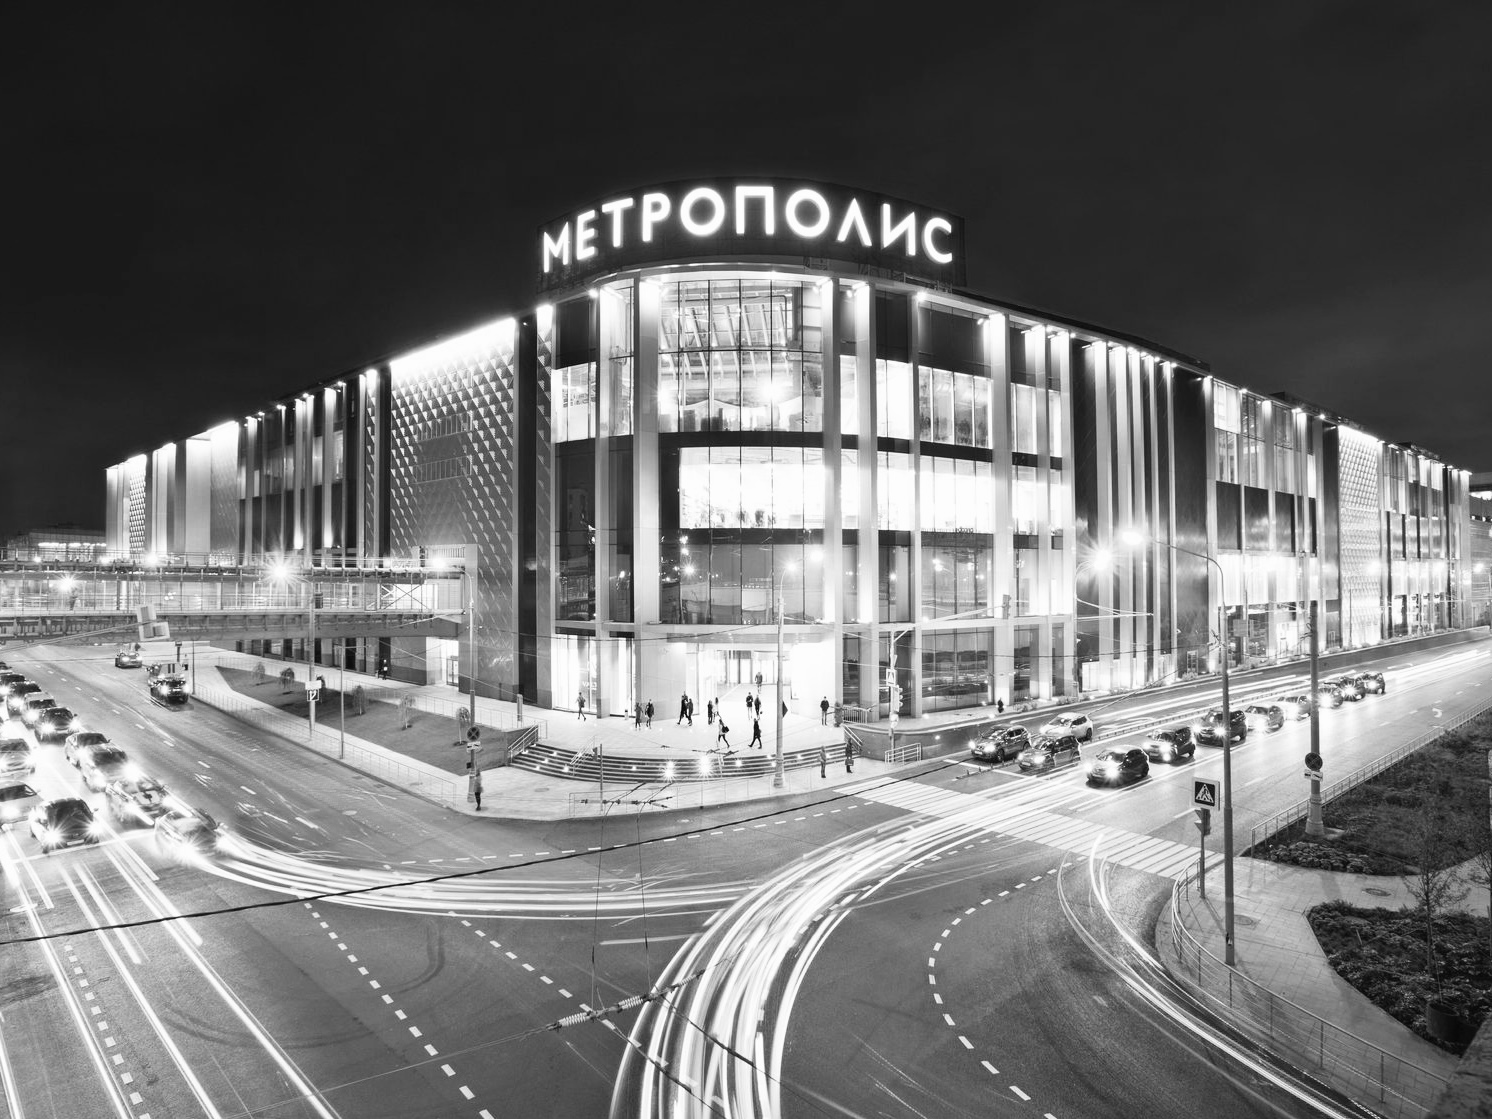 “Metropolis” shopping center